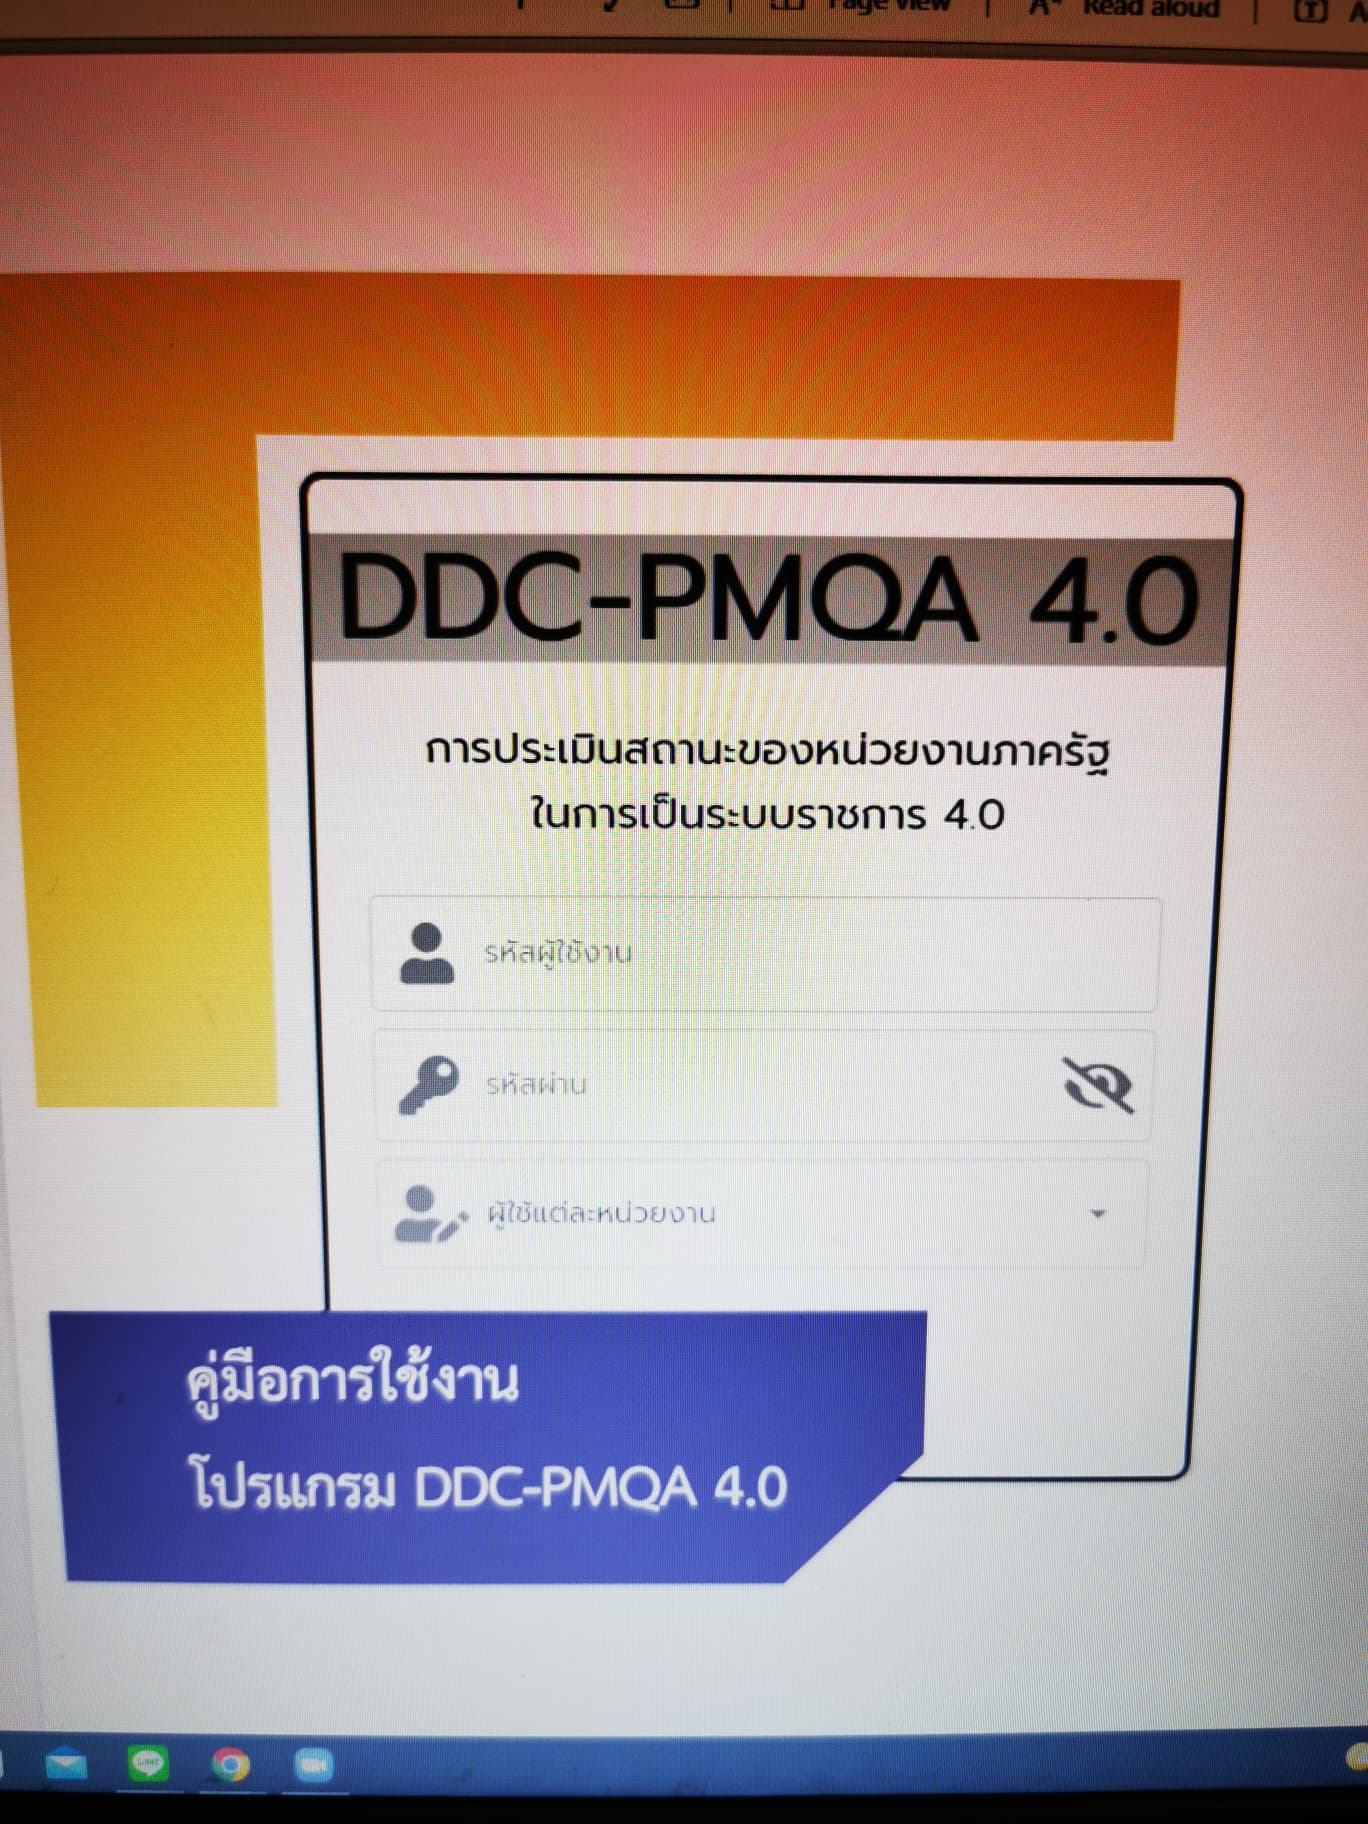 คู่มือการใช้งานโปรแกรม DDC-PMQA4.0